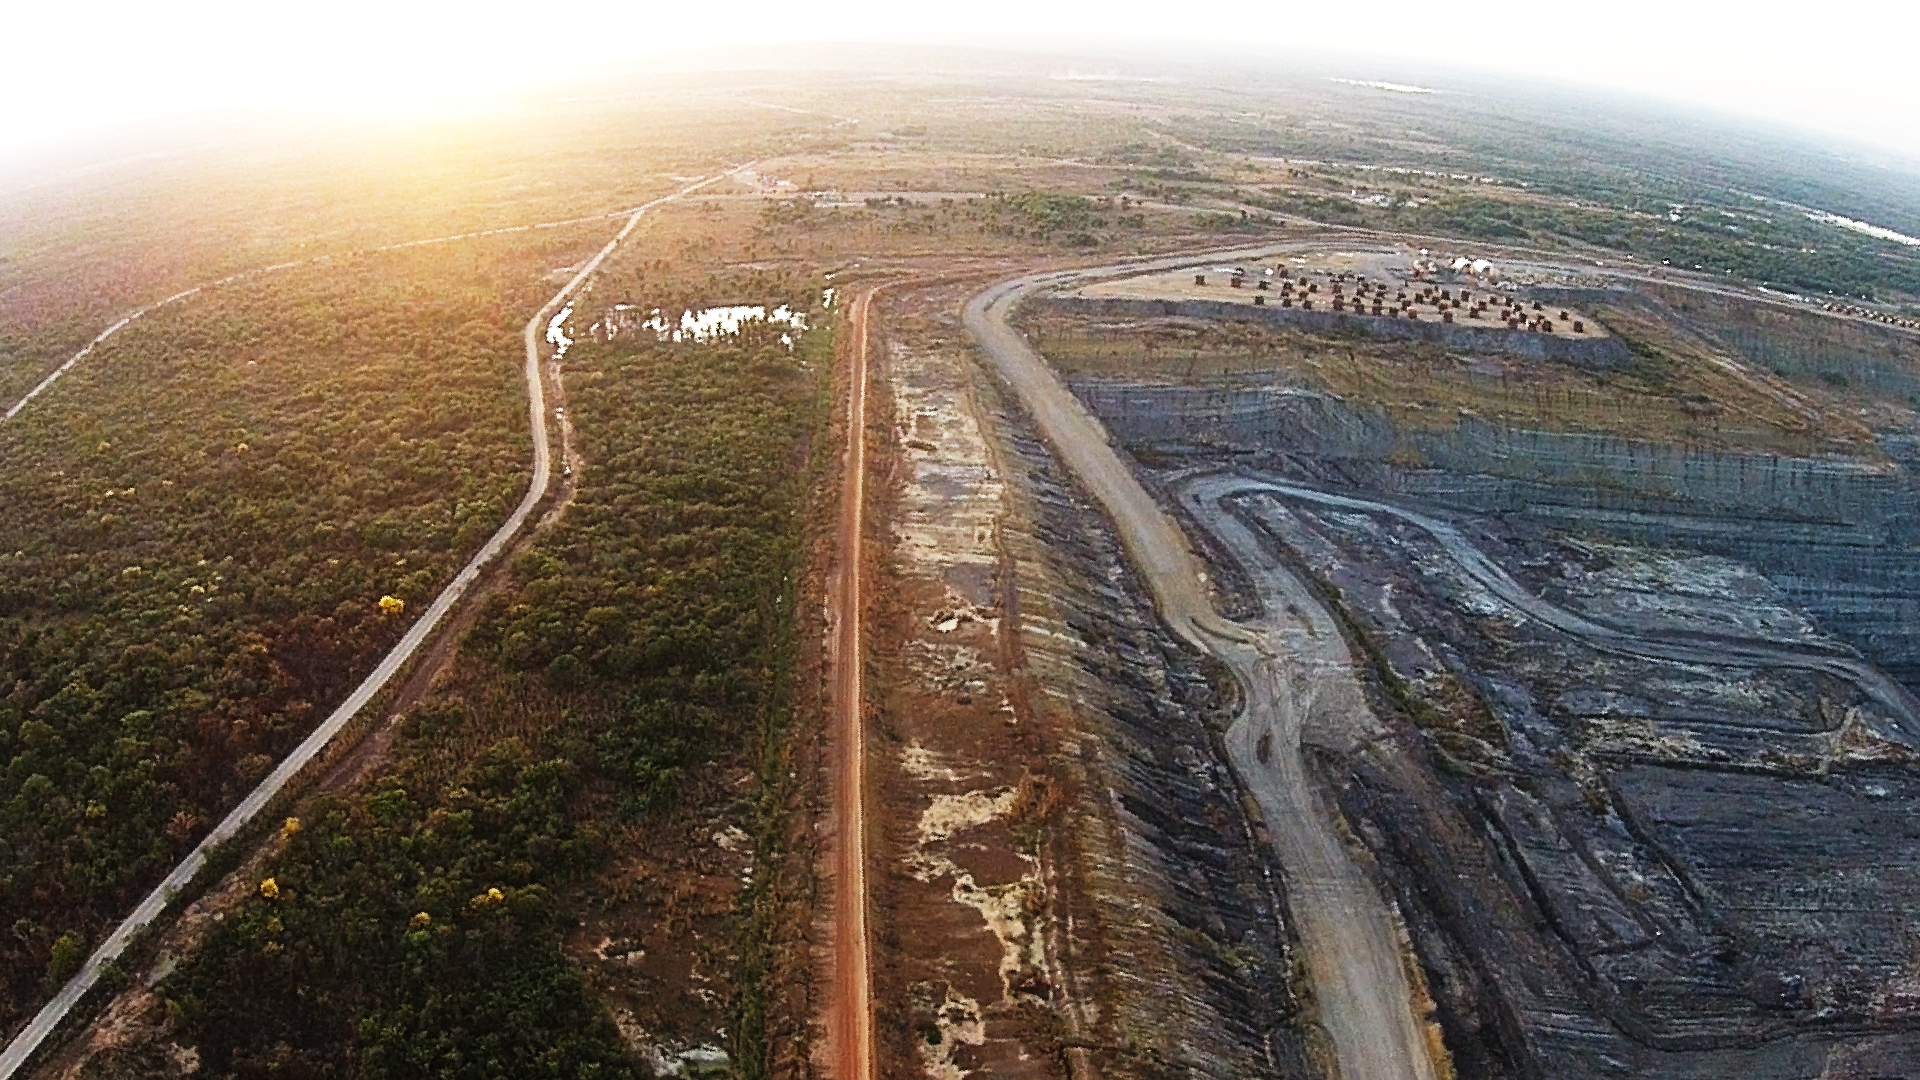 Vista aérea de la mina de Calenturitas en Cesar. Del lado izquierdo se ve parte de lo que queda del bosque tropical seco en la zona y del lado derecho uno de los pozos de extracción de carbón. Al fondo se ven estacionadas numerosas máquinas de minería.